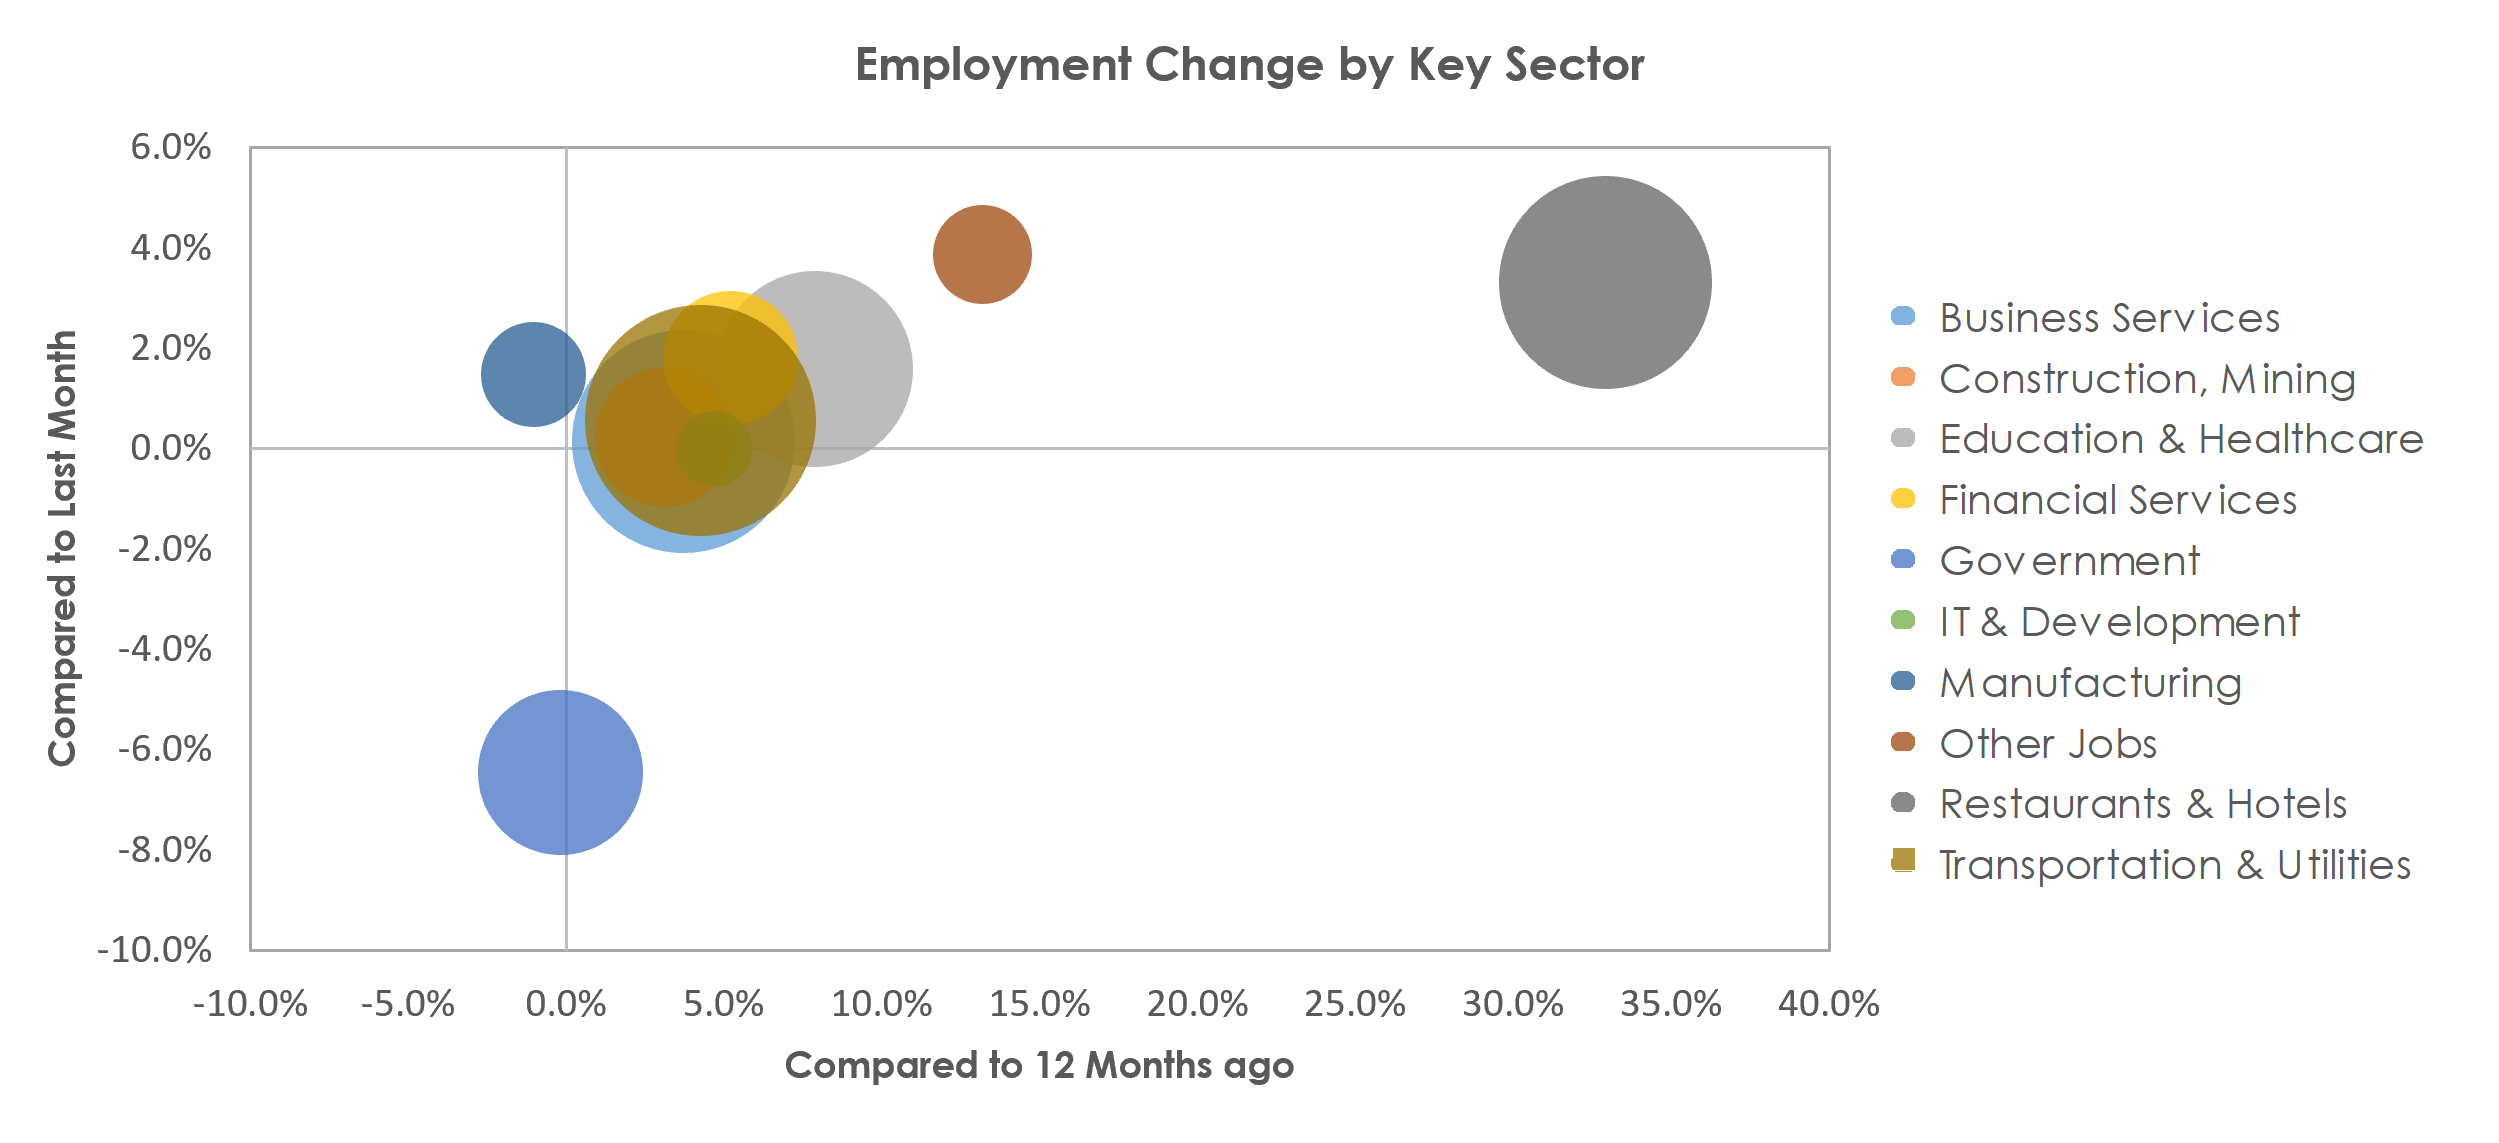 Orlando-Kissimmee-Sanford, FL Unemployment by Industry June 2021